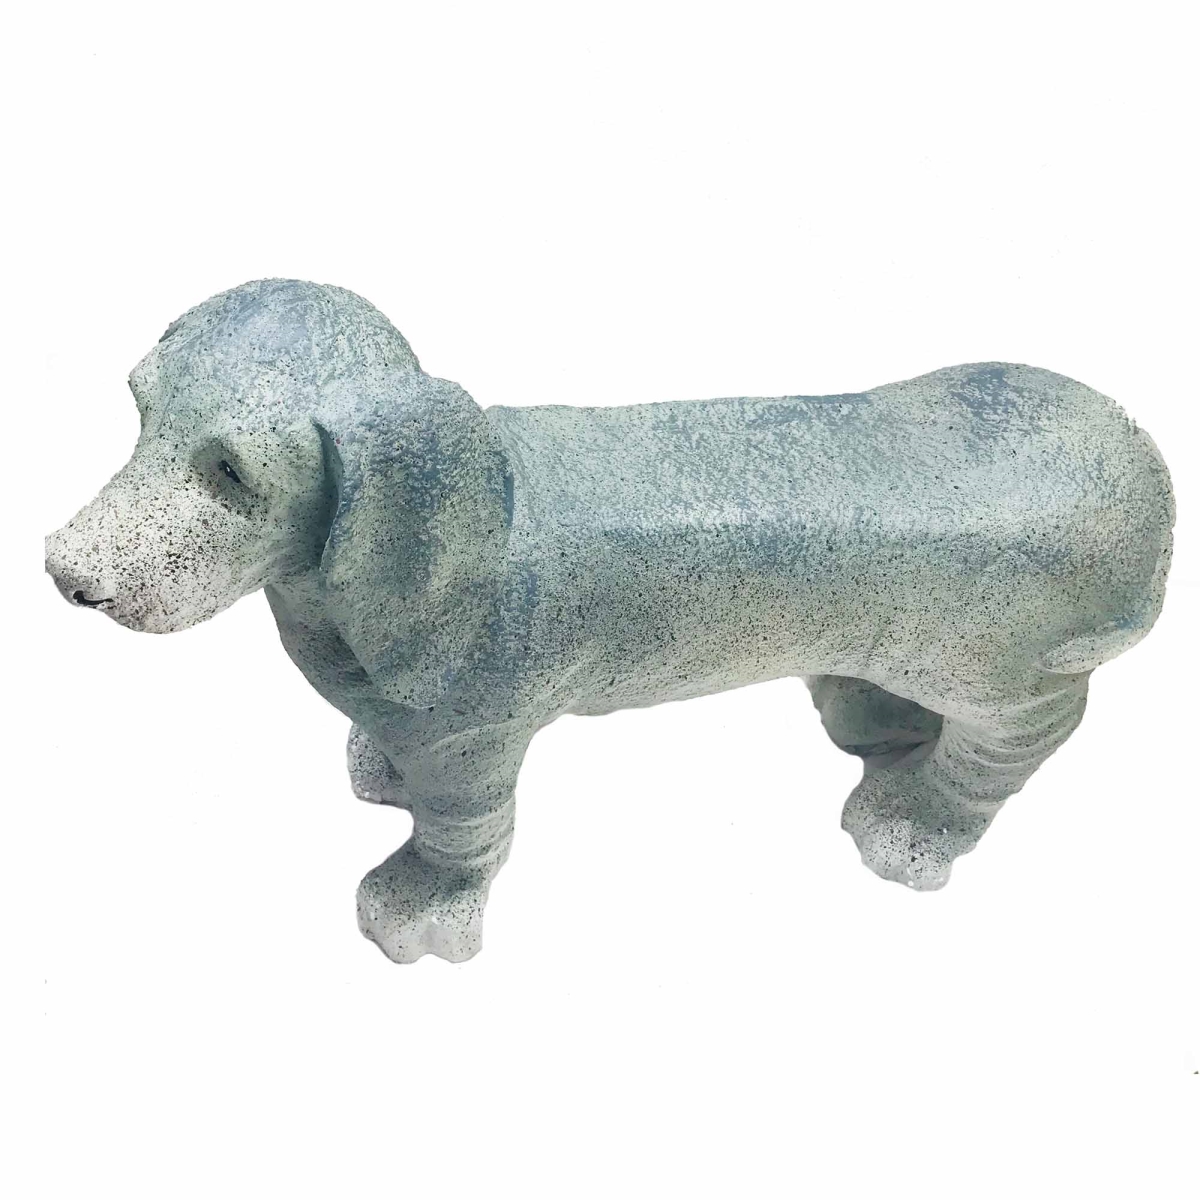 Bm-j4-1001 Dog Bench Figurine